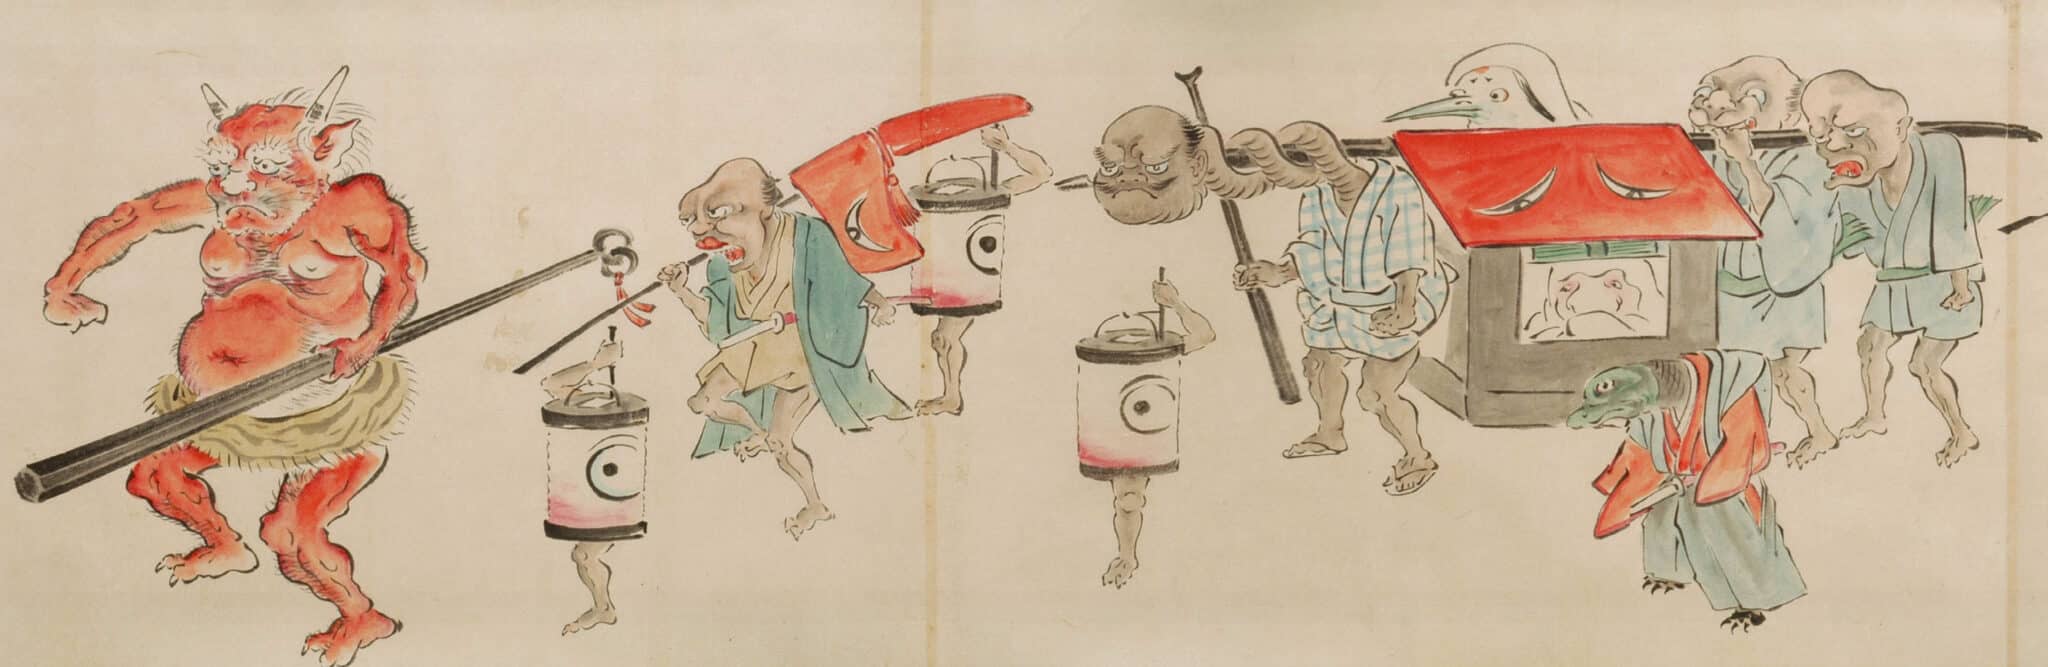 Les Yokai, créatures légendaires du folklore japonais